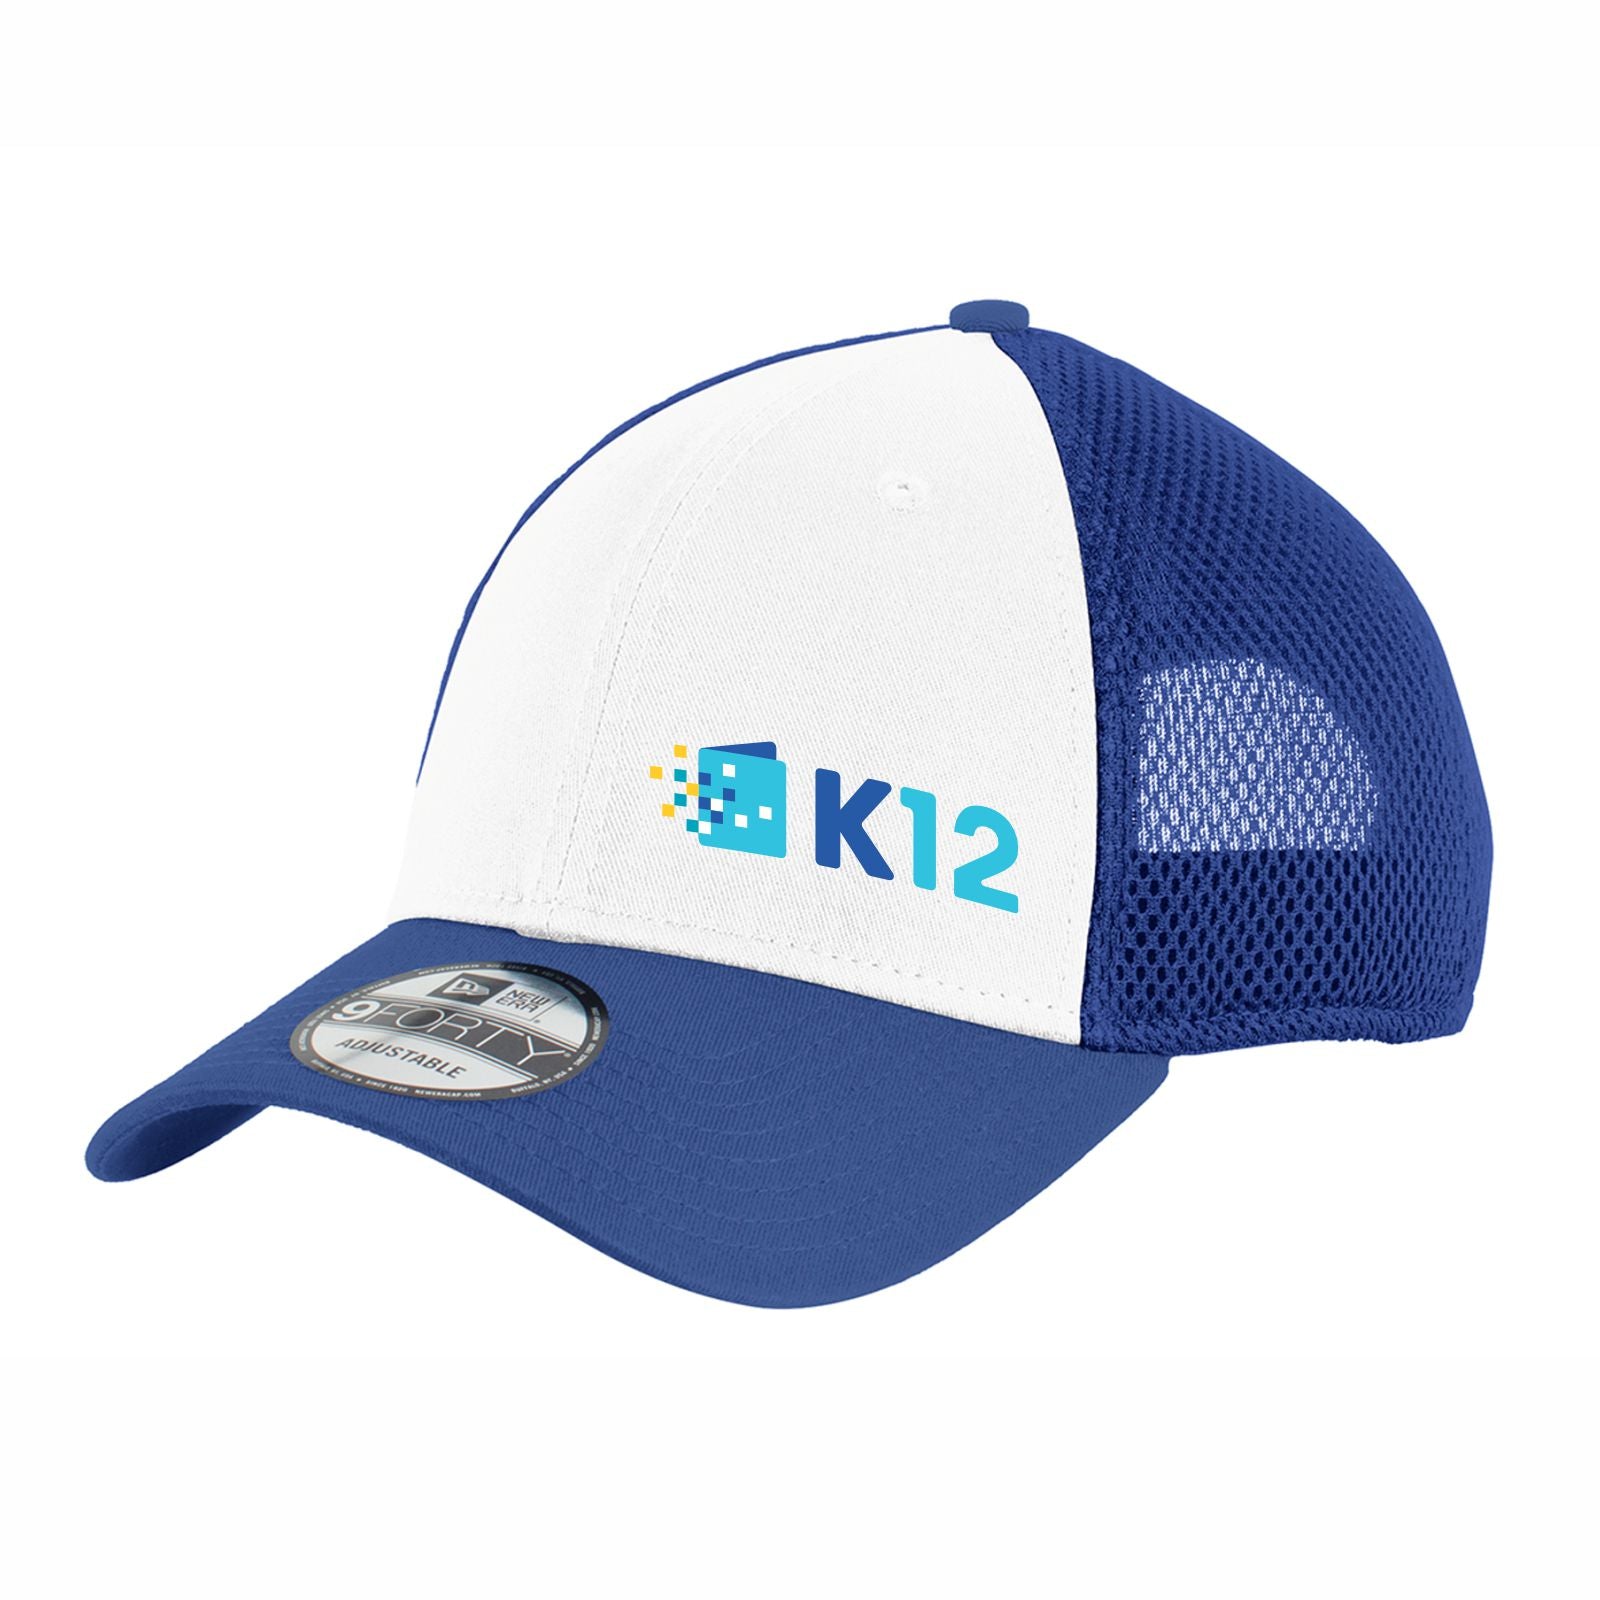 K12 LOGO NEW ERA SNAPBACK CONTRAST FRONT MESH CAP